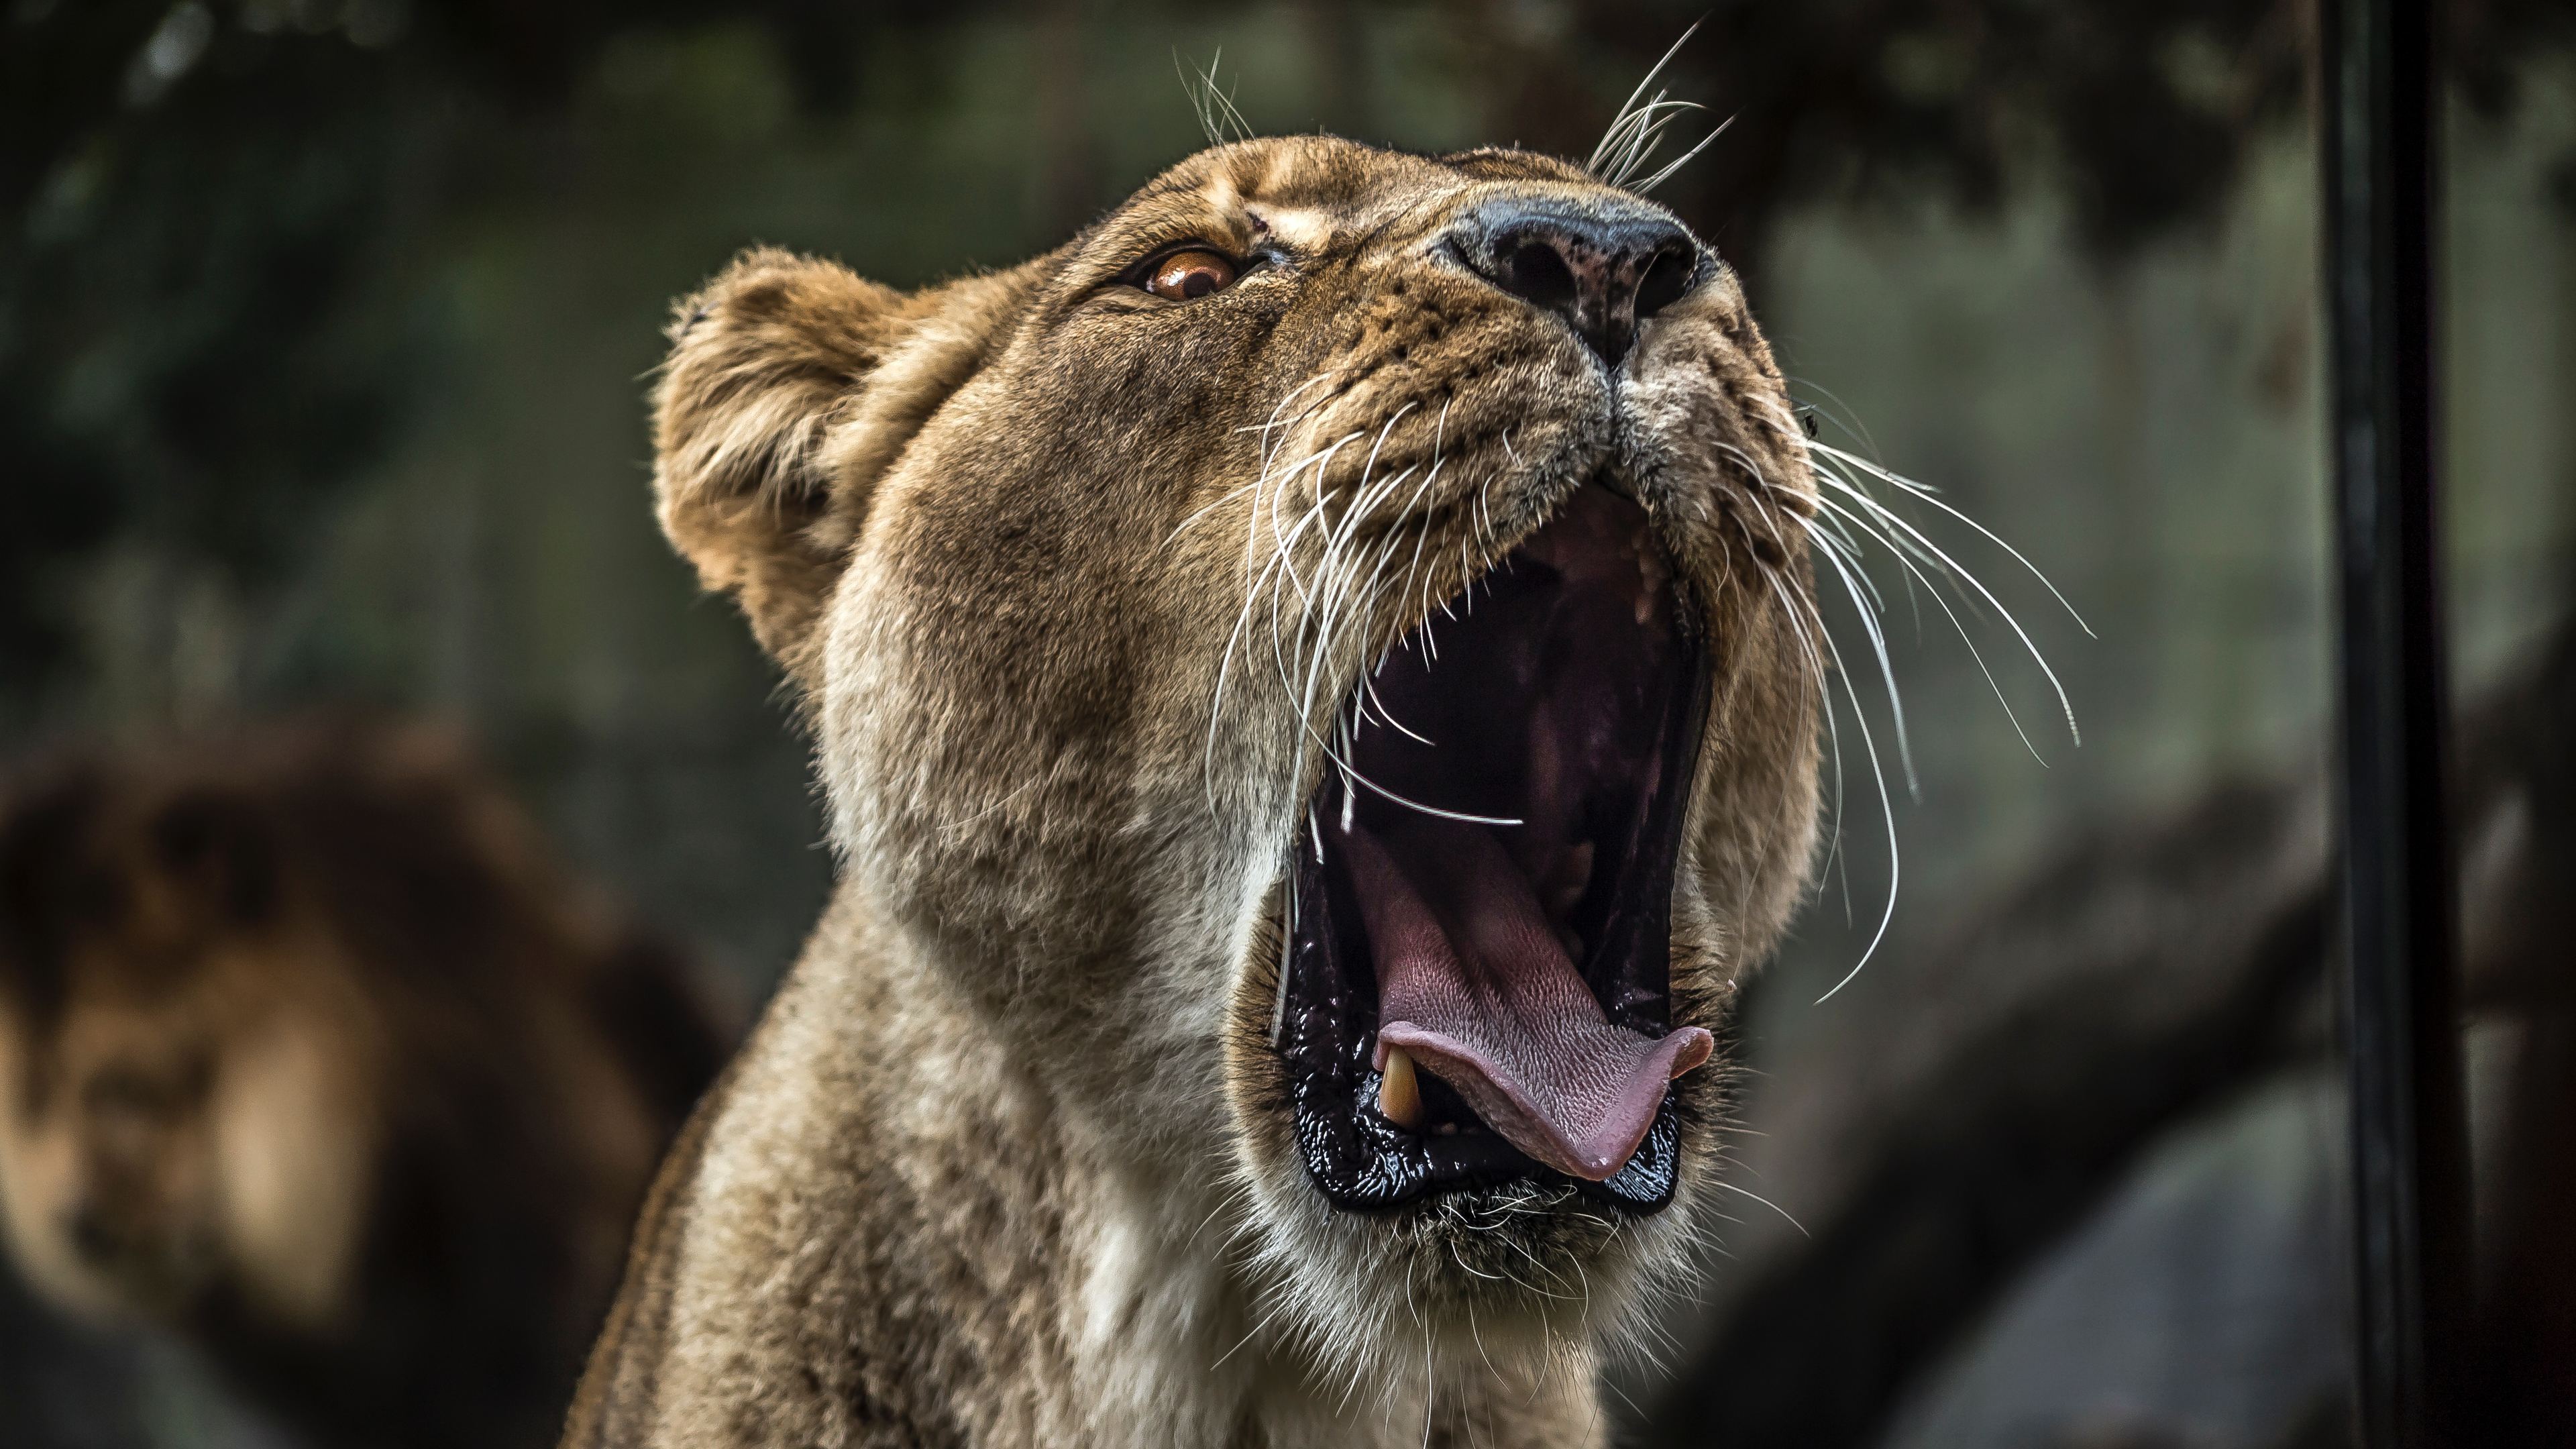 lion with open mouth 4k 1542239354 - Lion With Open Mouth 4k - predator wallpapers, lion wallpapers, hd-wallpapers, animals wallpapers, 4k-wallpapers